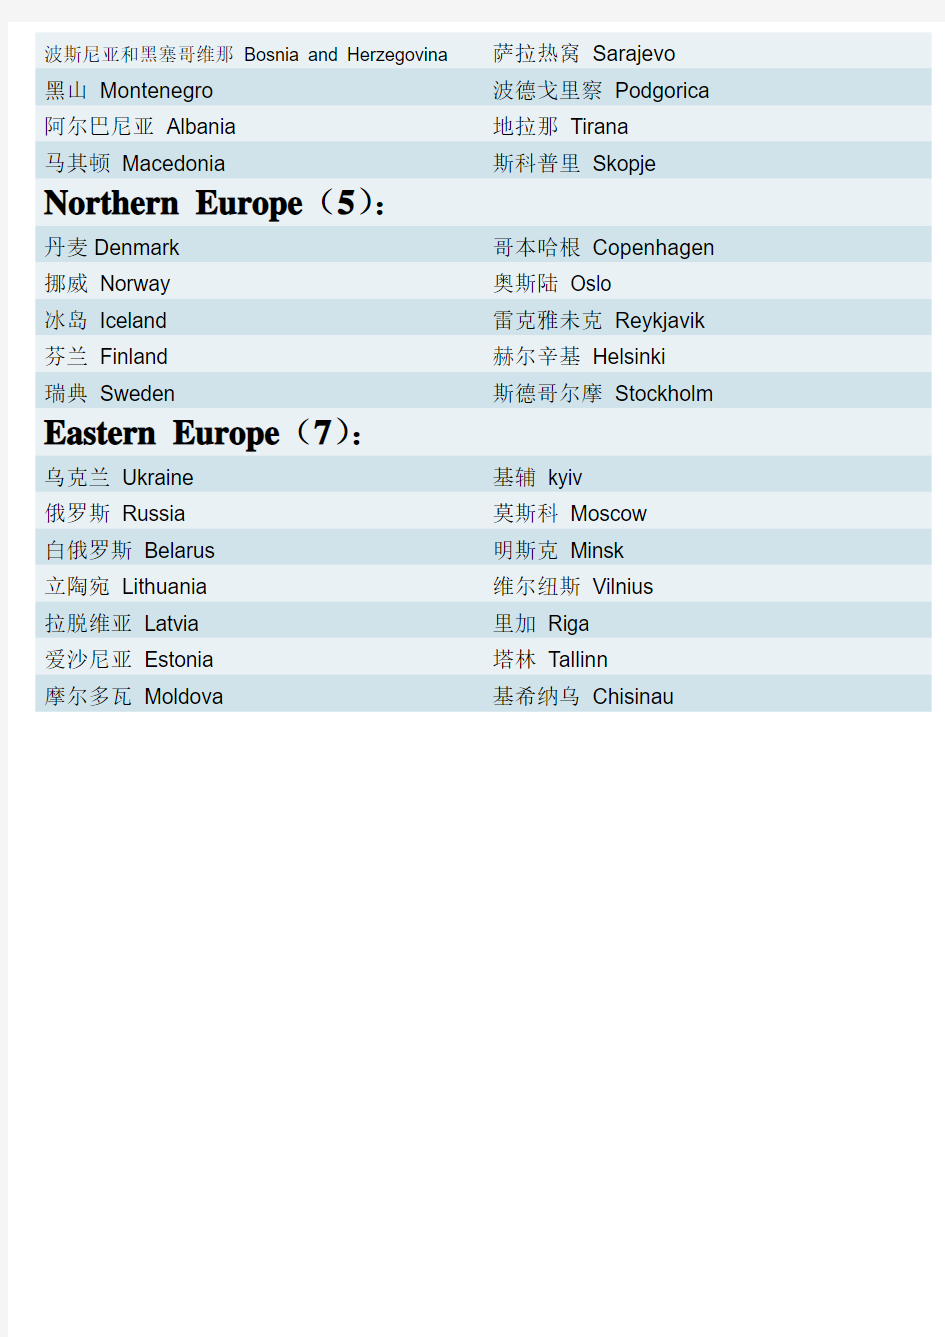 欧洲各国国名及首都中英文对照表